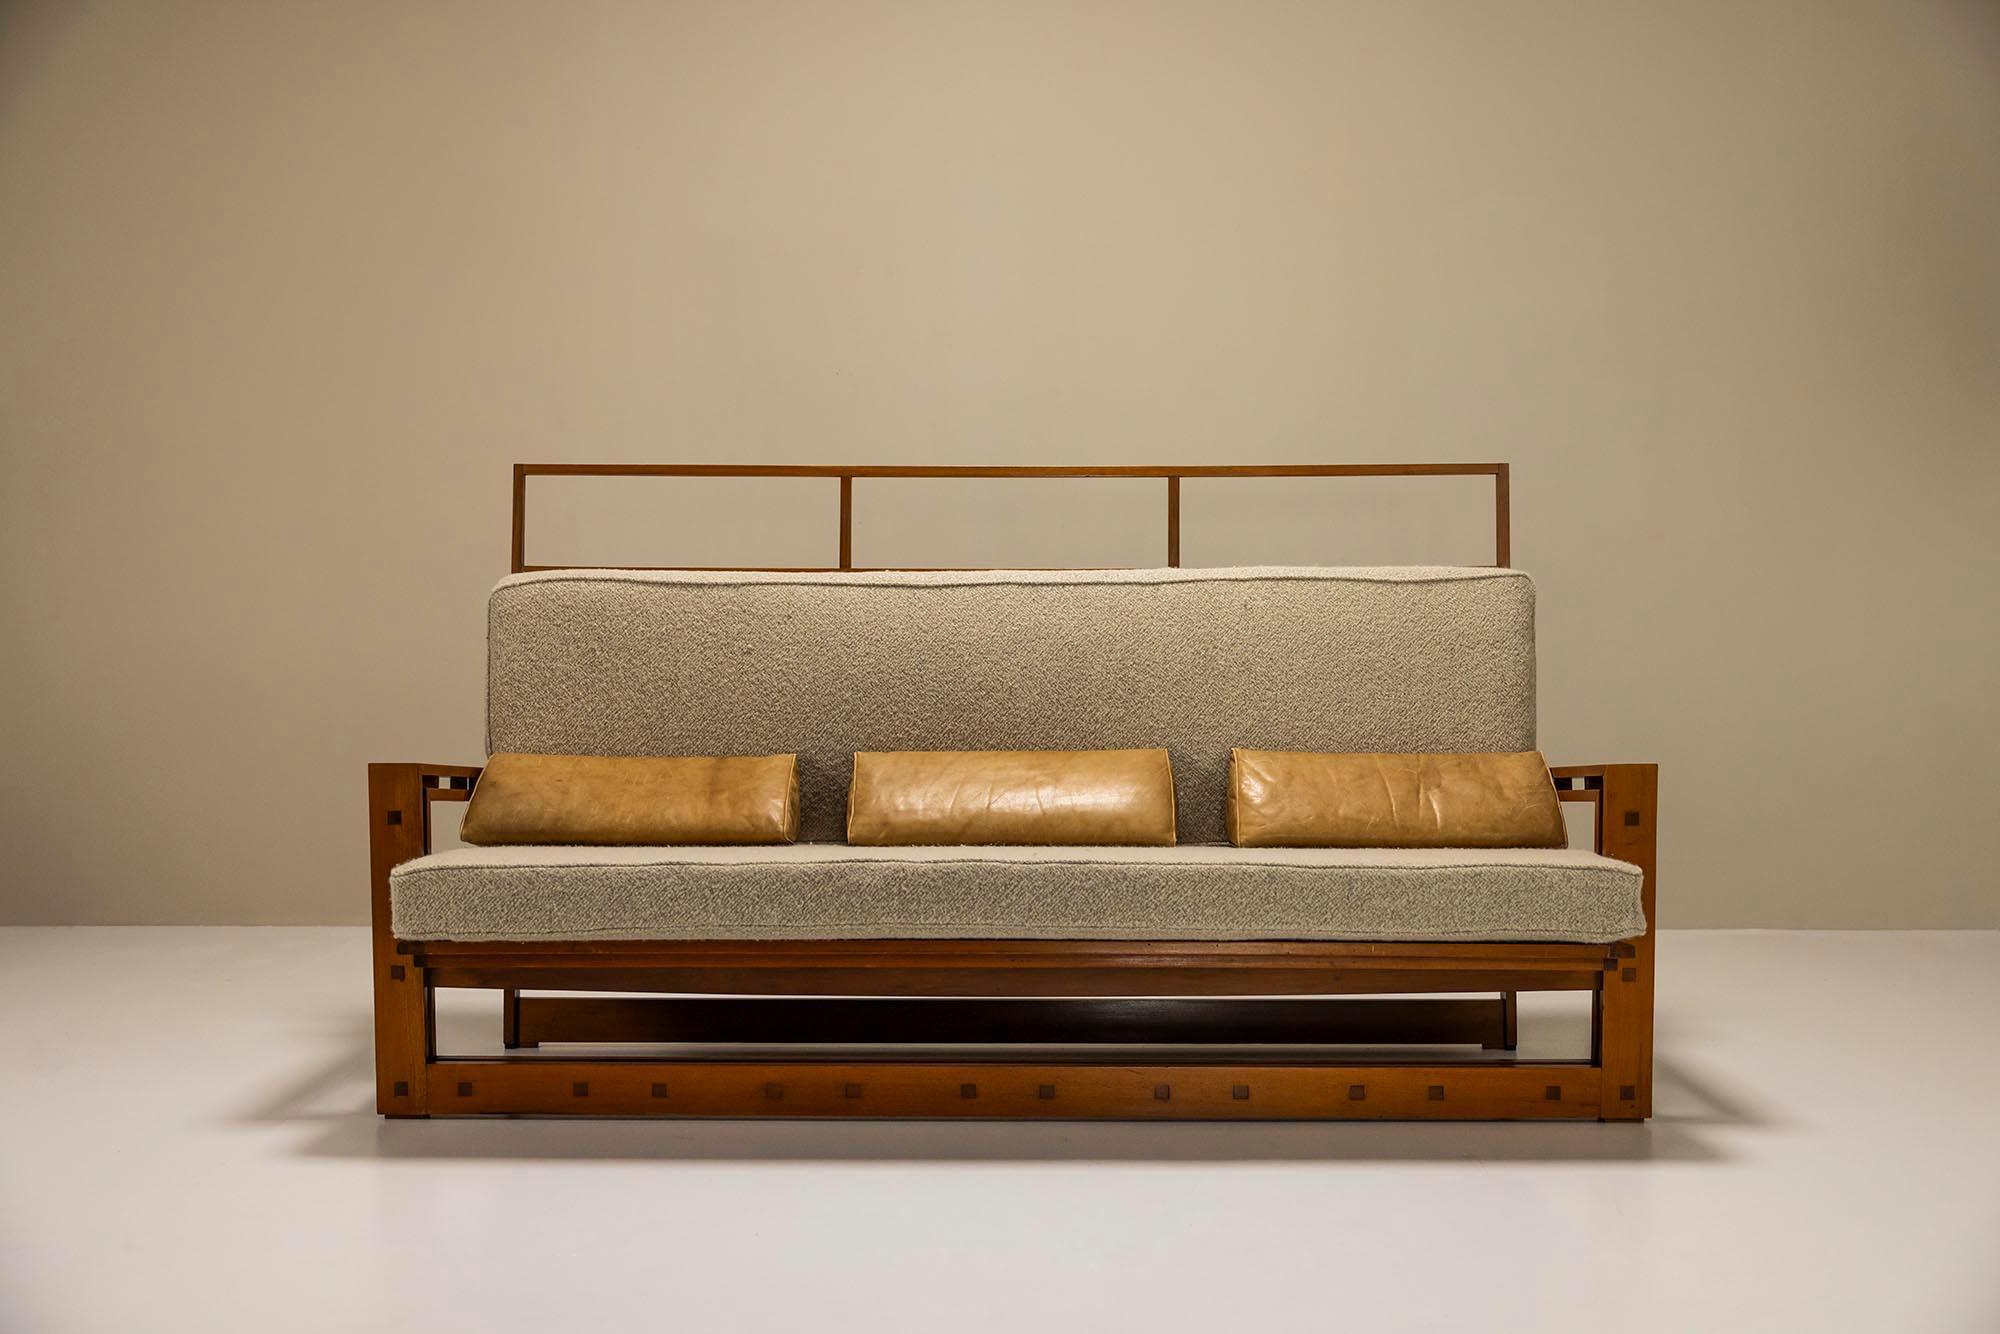 Ce canapé unique a été conçu par l'architecte italien Fausto Bontempi, qui a principalement travaillé à Brescia et dans ses environs. Il est diplômé de l'université Iuav de Venise et a ensuite travaillé comme professeur d'architecture. Tout au long